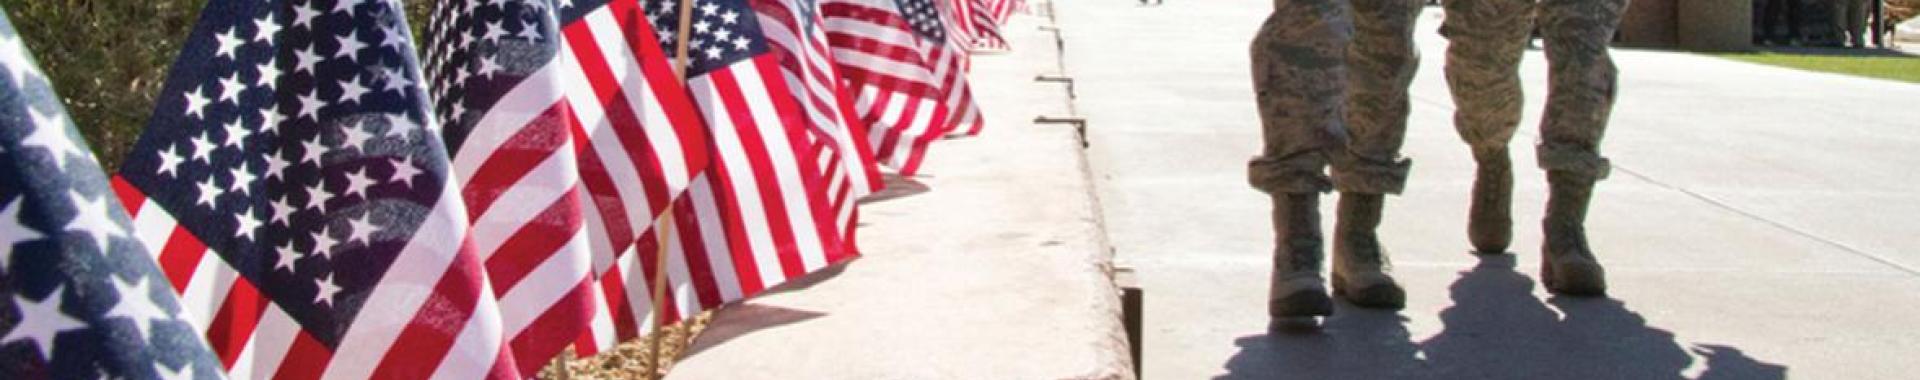 U.S. flags lining ASU's Hayden Lawn path.